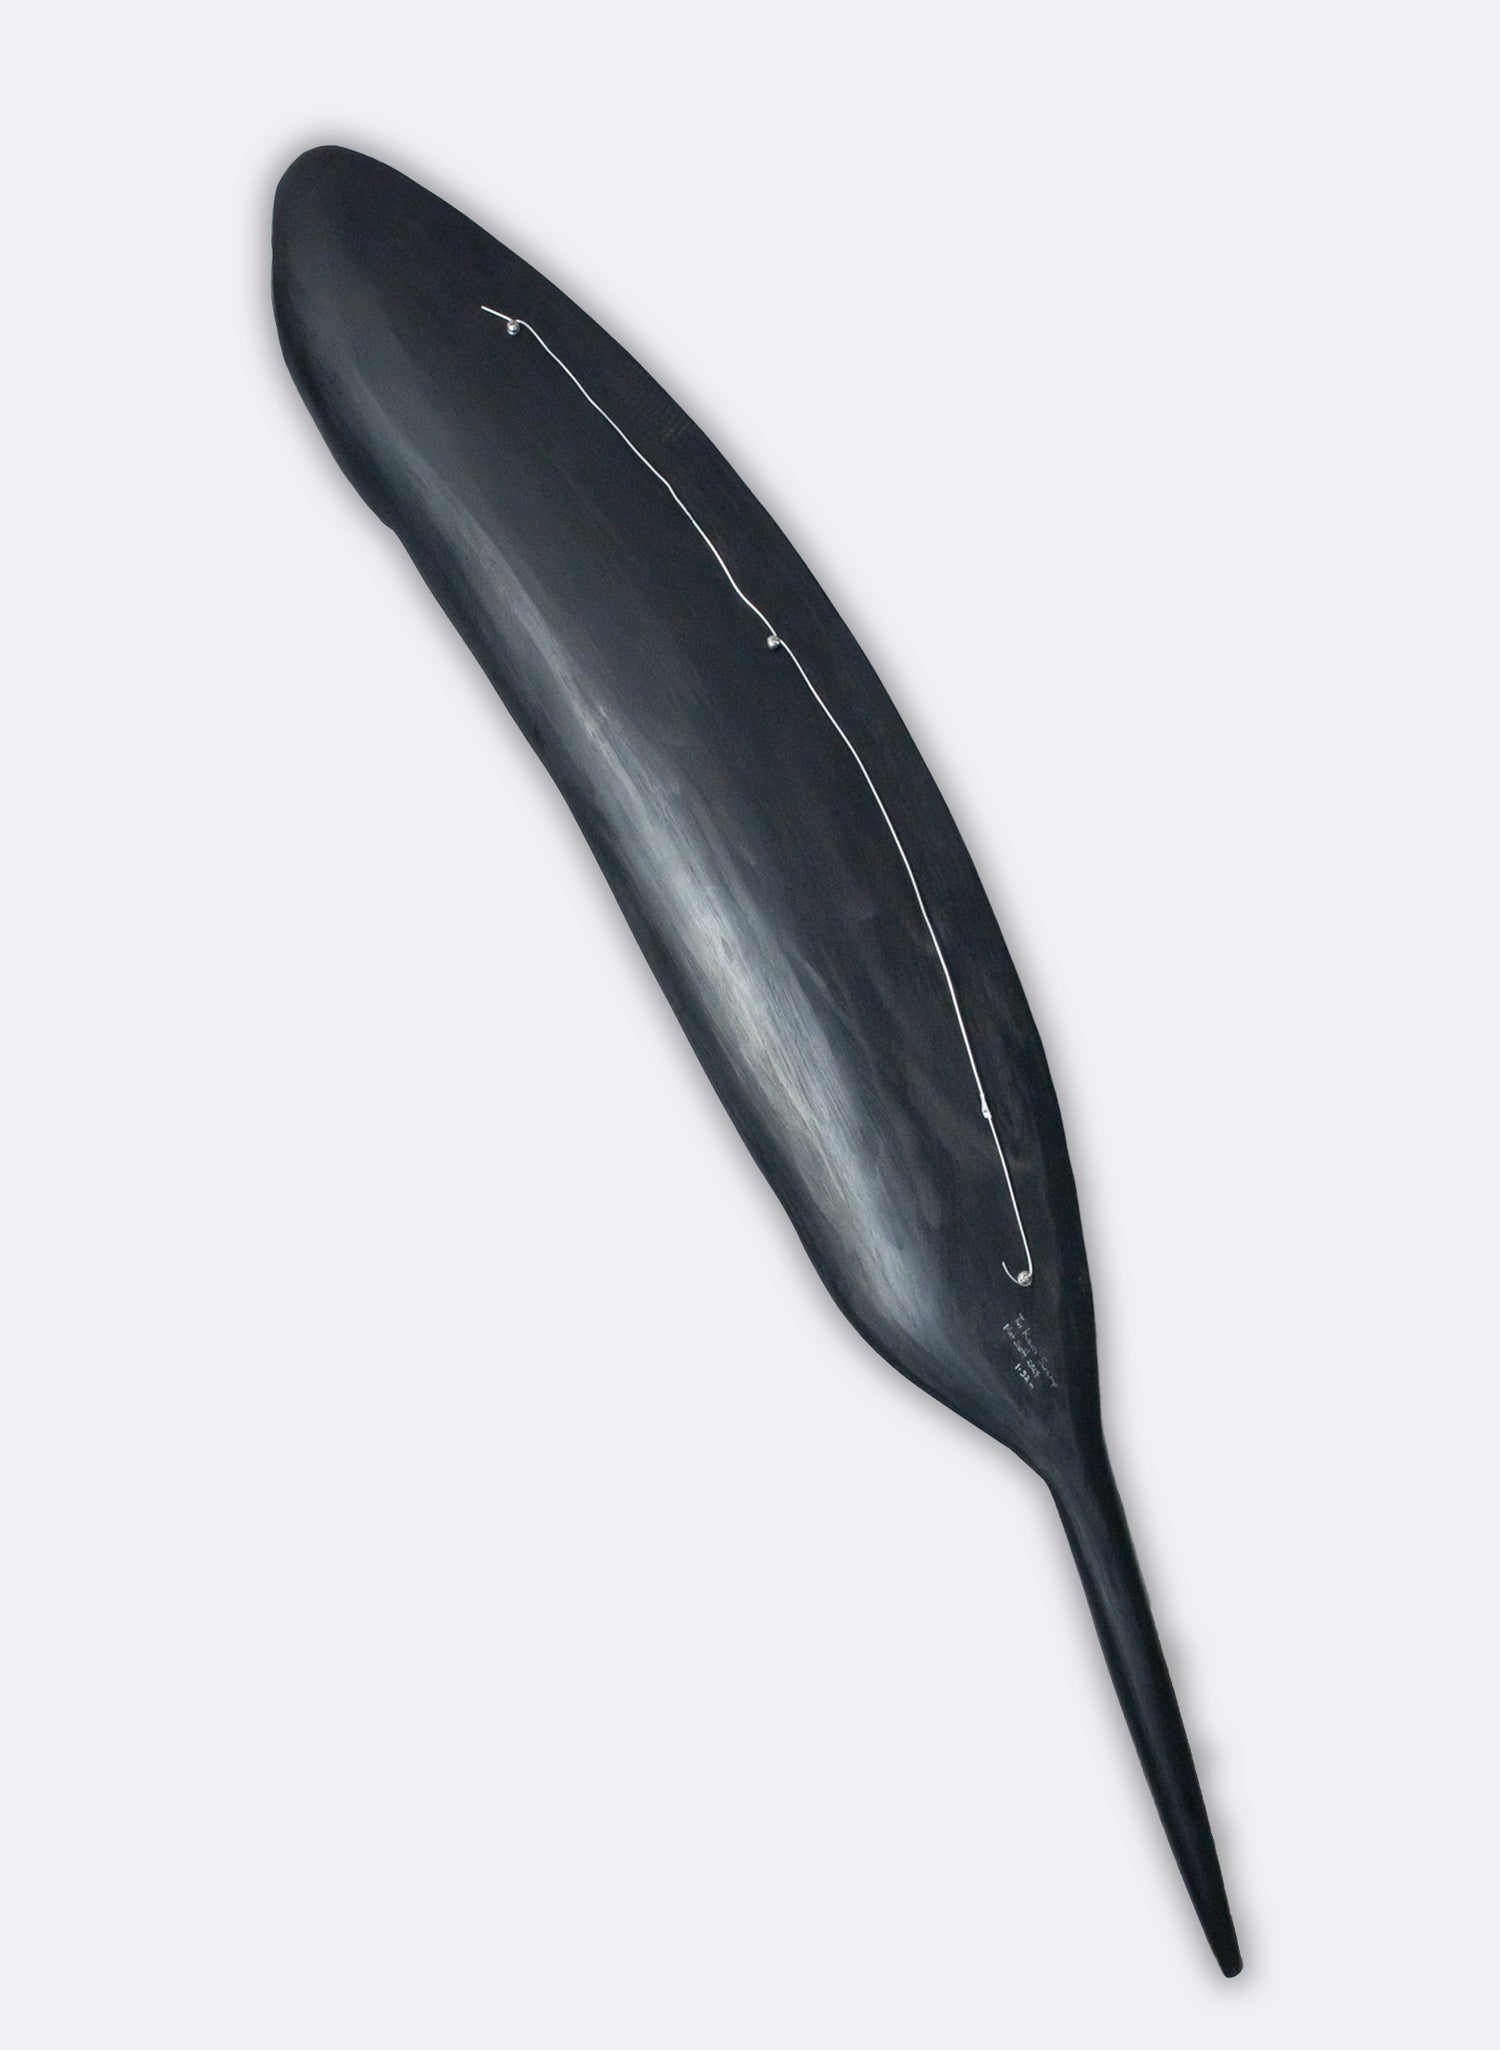 Tui Feather 1520mm - Black Swamp Kauri